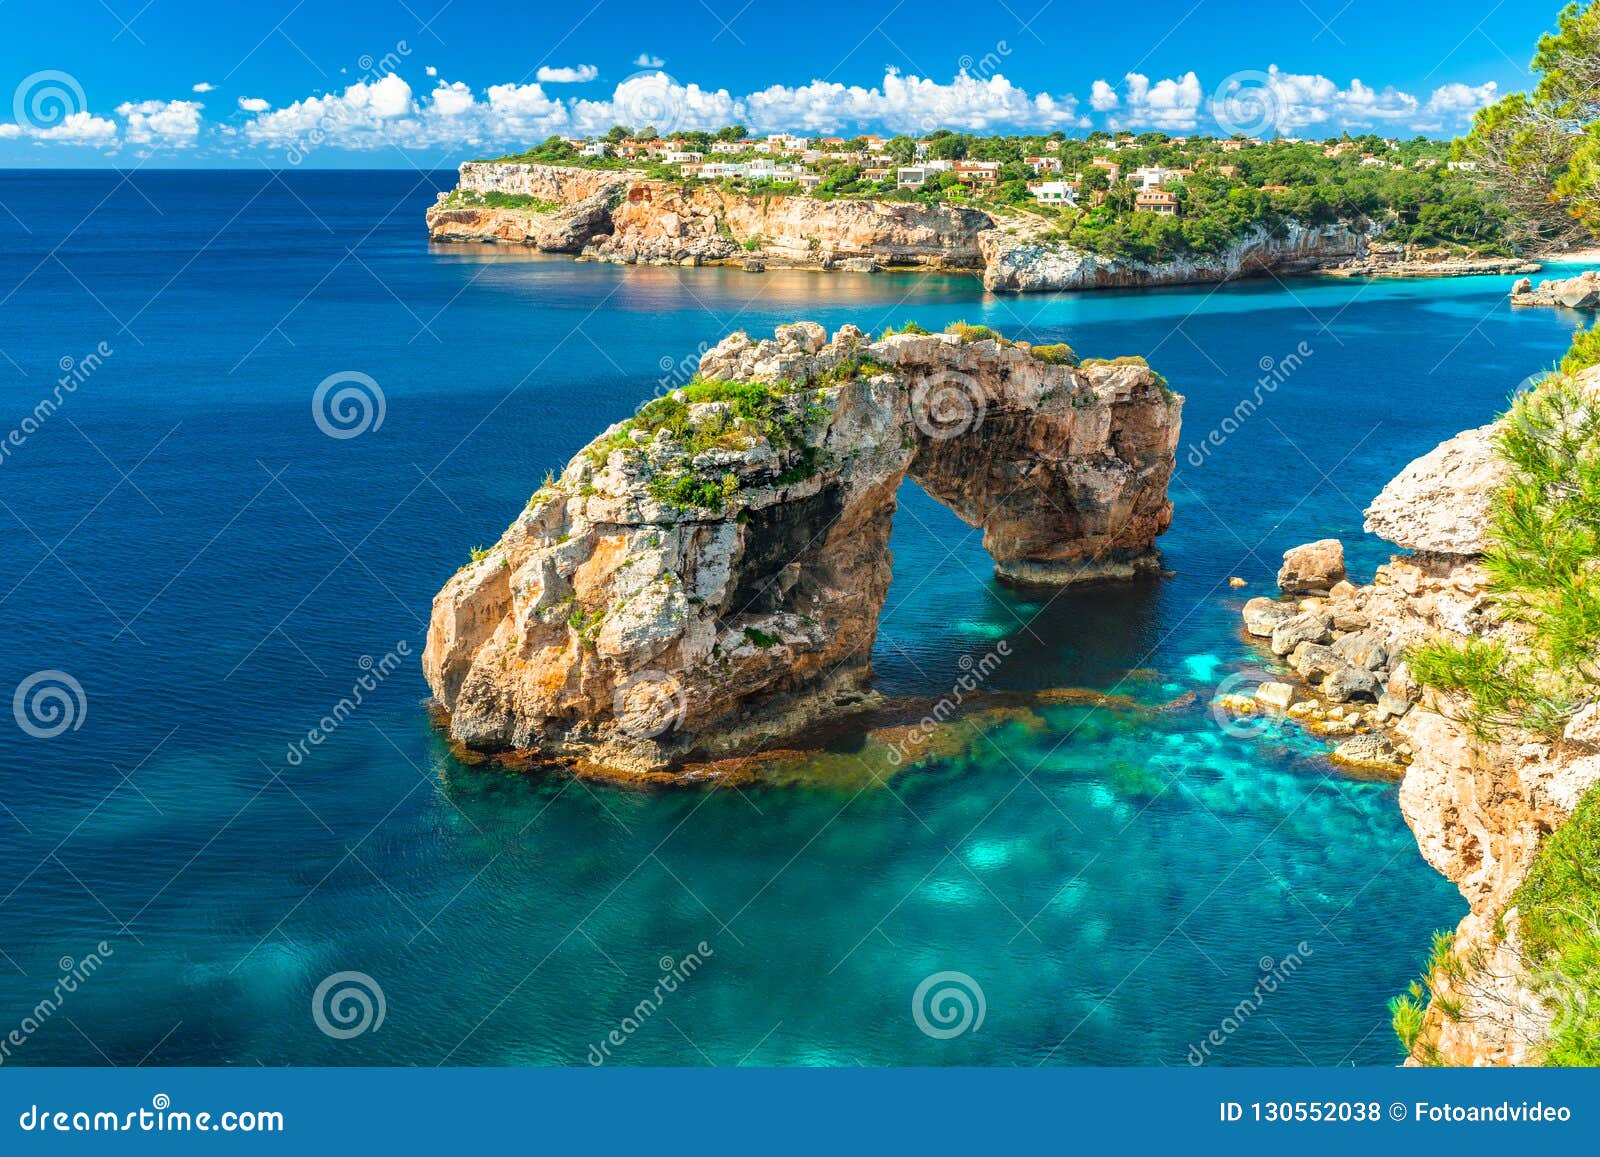 natural rock arch es pontas on majorca island, spain